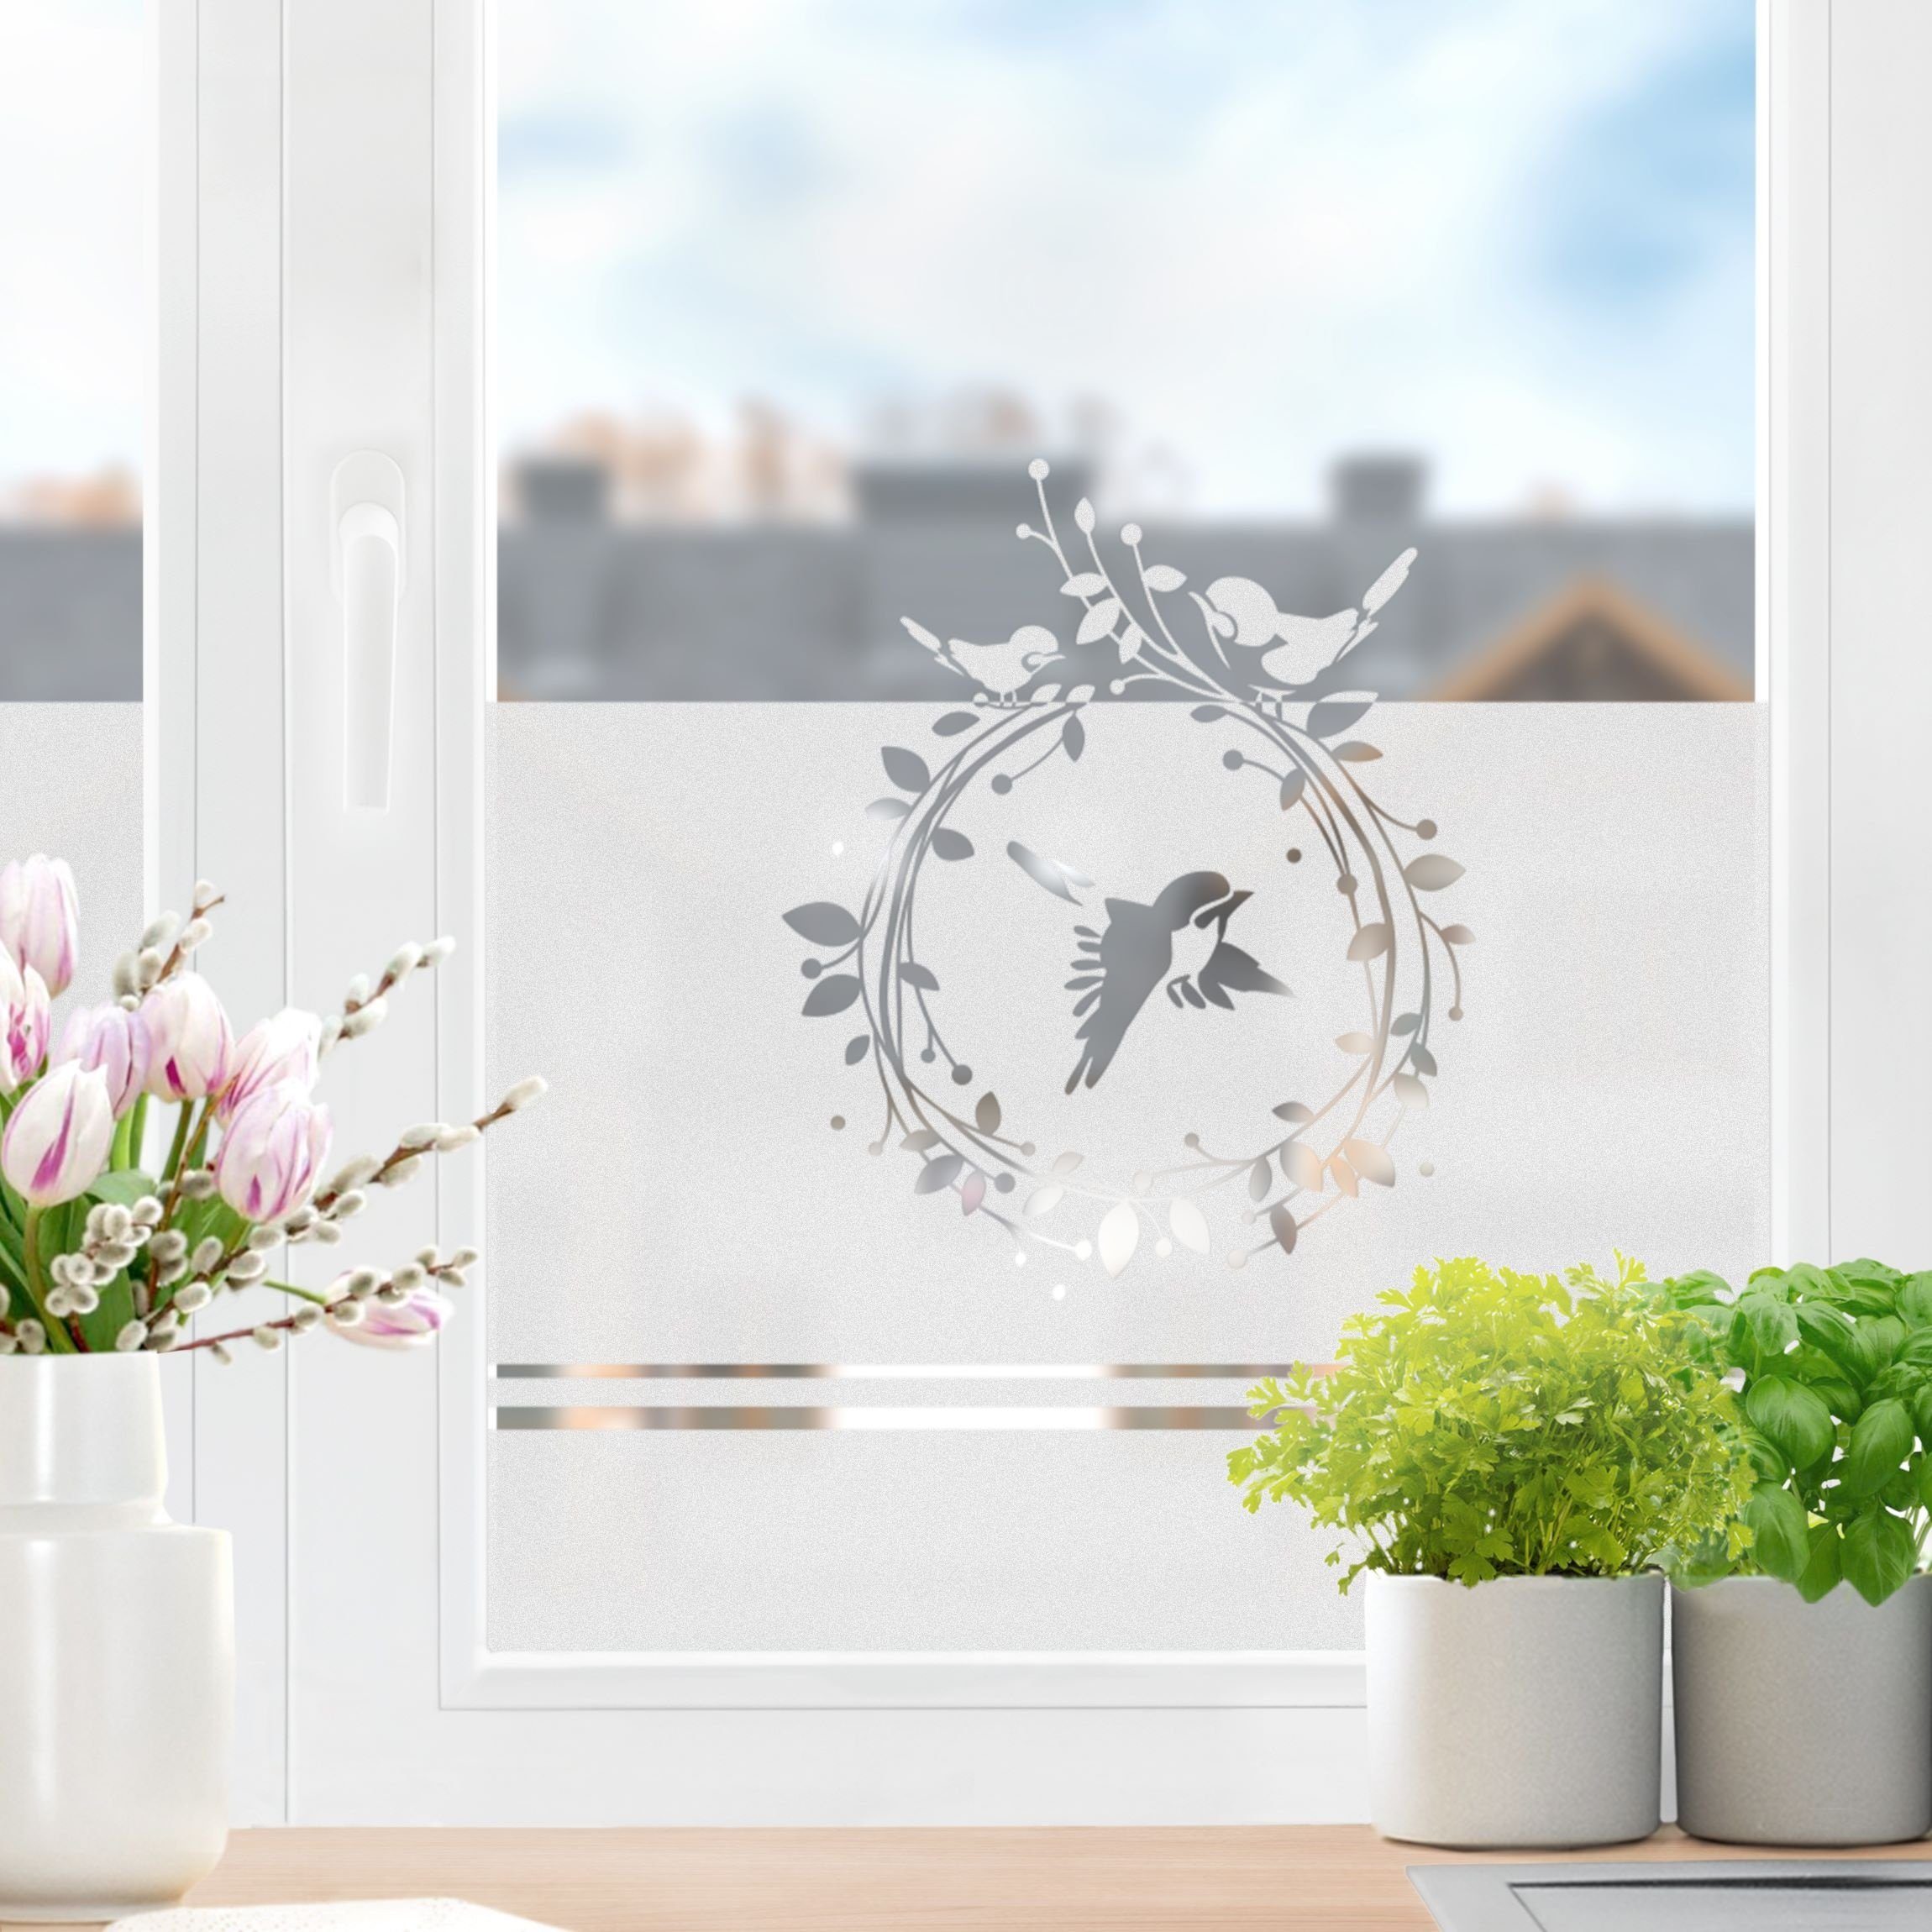 Fensterfolie statisch haftend Kreative Pflanze Statische Fensterfolien  Anti-UV Folie Für Zuhause Badzimmer oder Büro,Matt,mit sehr hohem  Sichtschutz,Grün(50x150cm) : : Küche, Haushalt & Wohnen